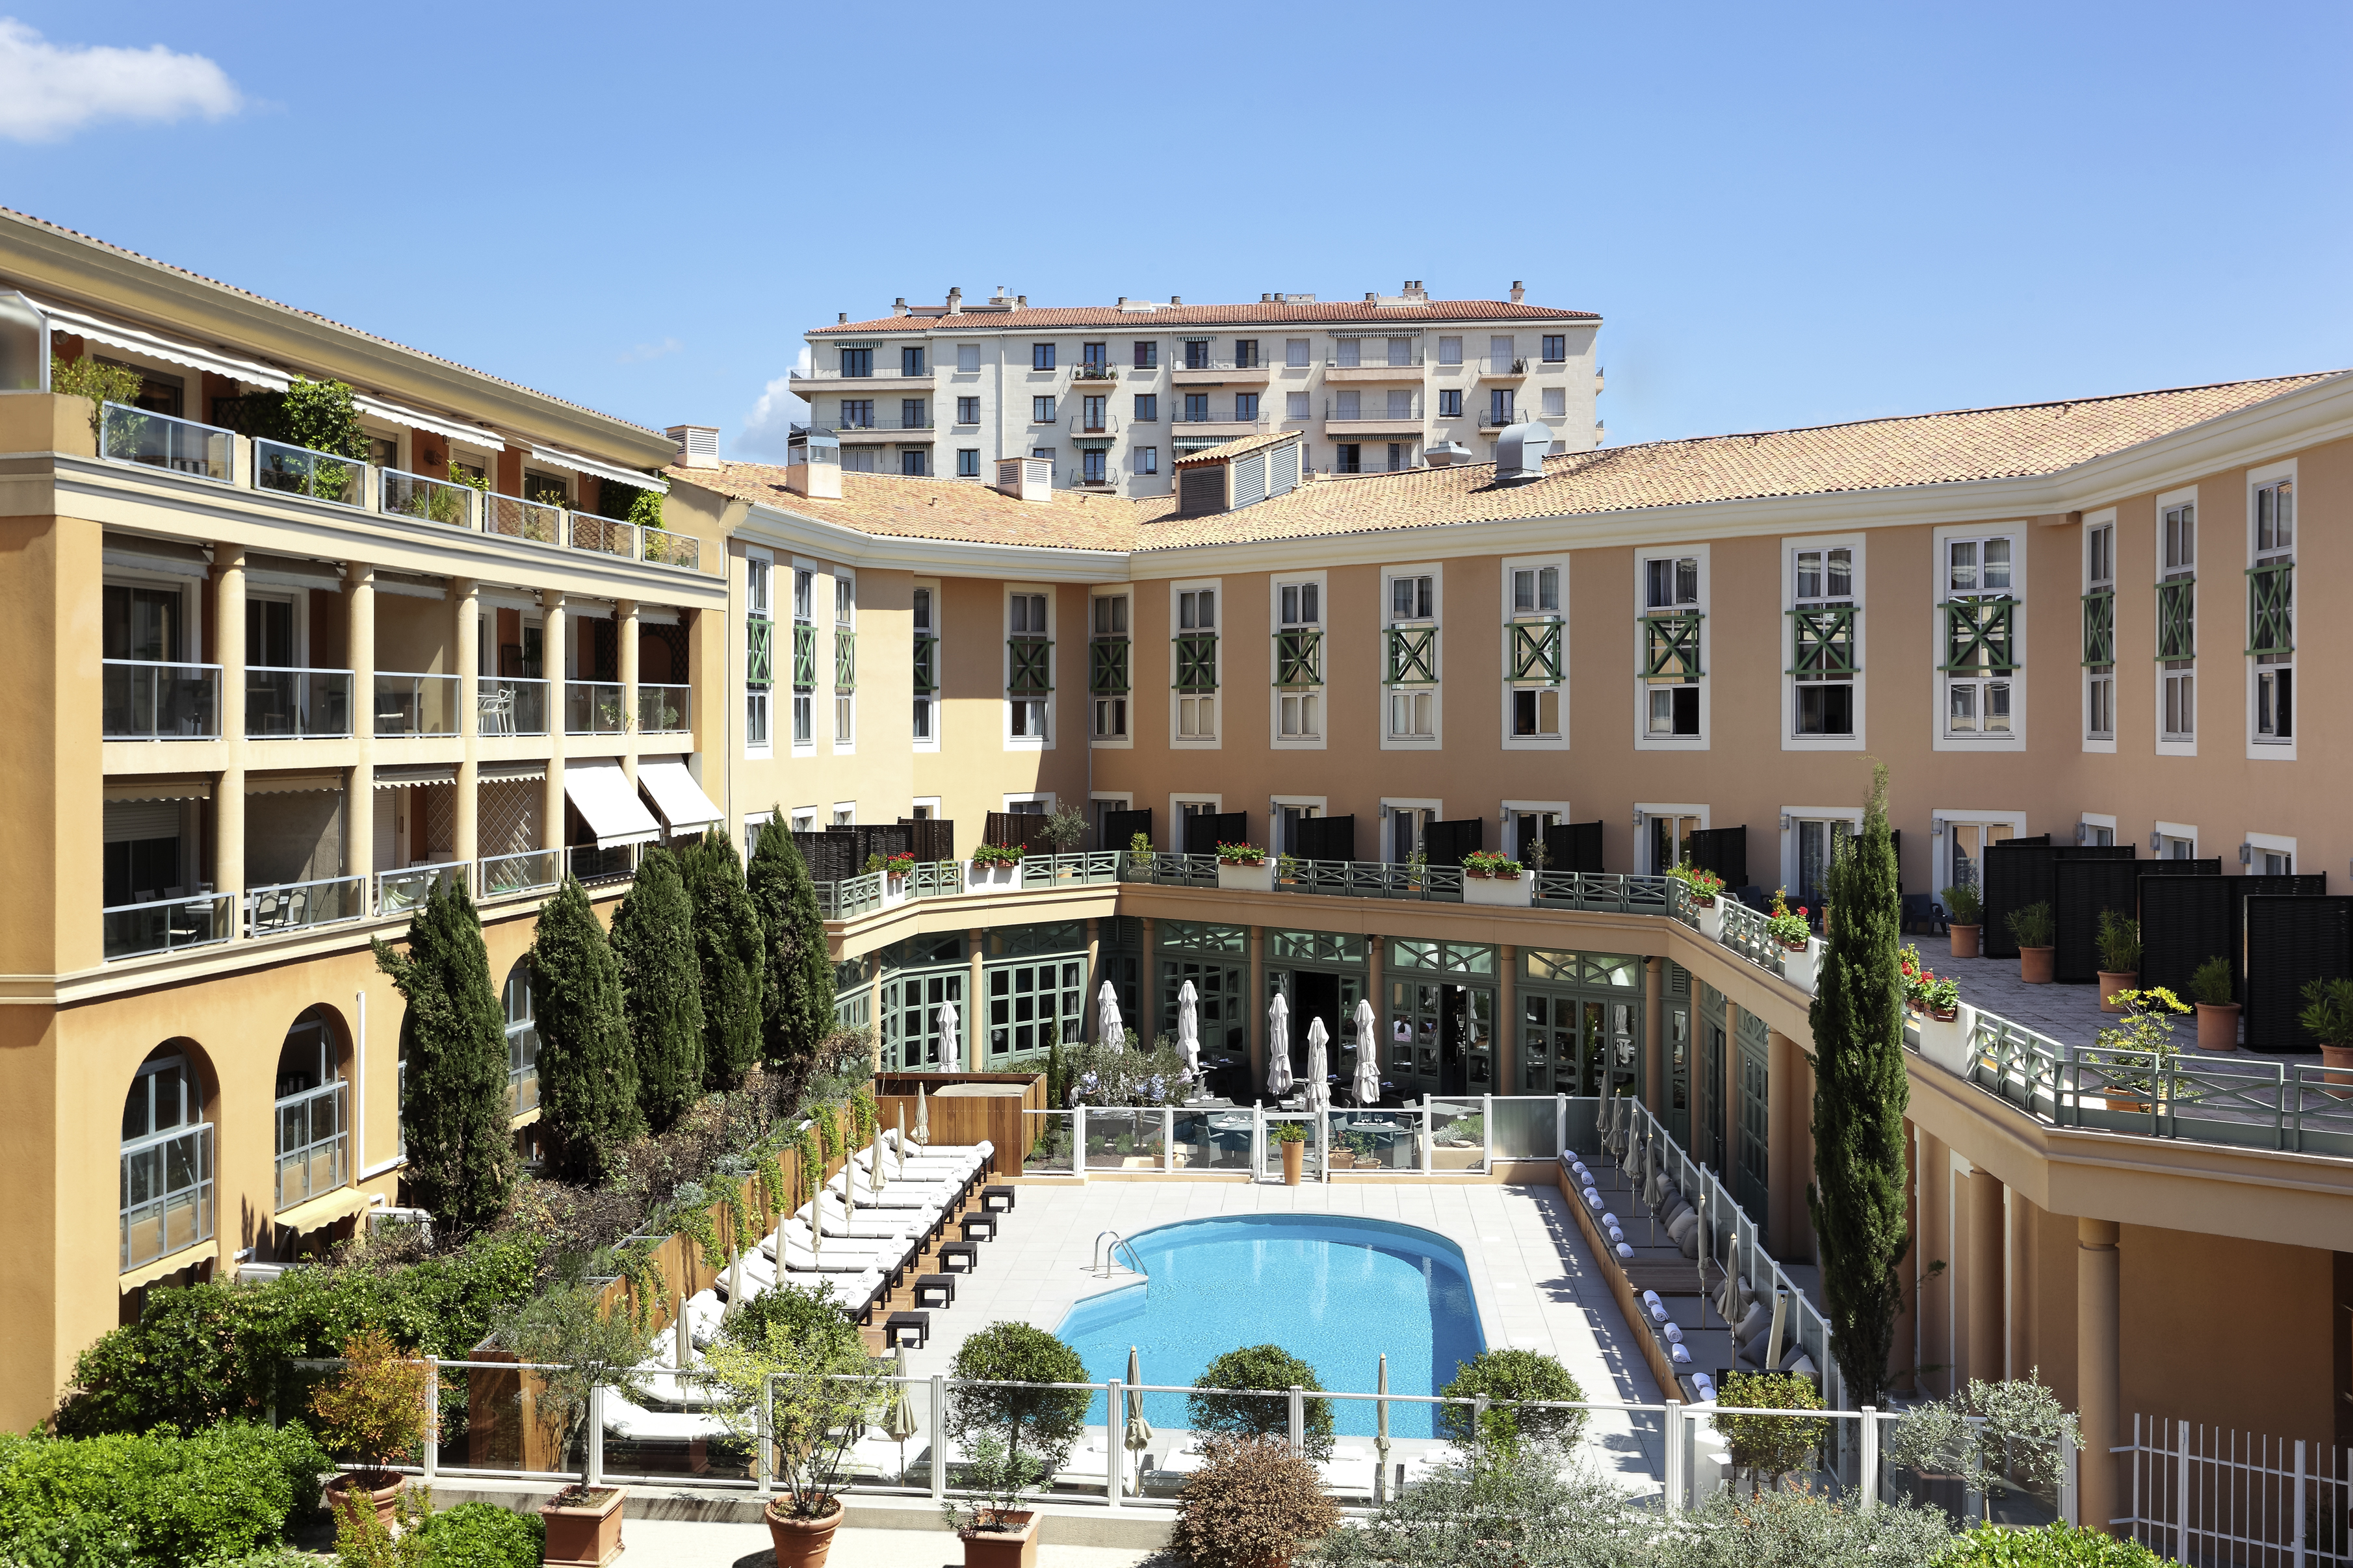 restaurant terrasse ; piscine ; sofitel ; grand hotel roi rené ; aix en provence ; sud de la france ; MGALLERY COLLECTION ; hôtel 4 étoiles 